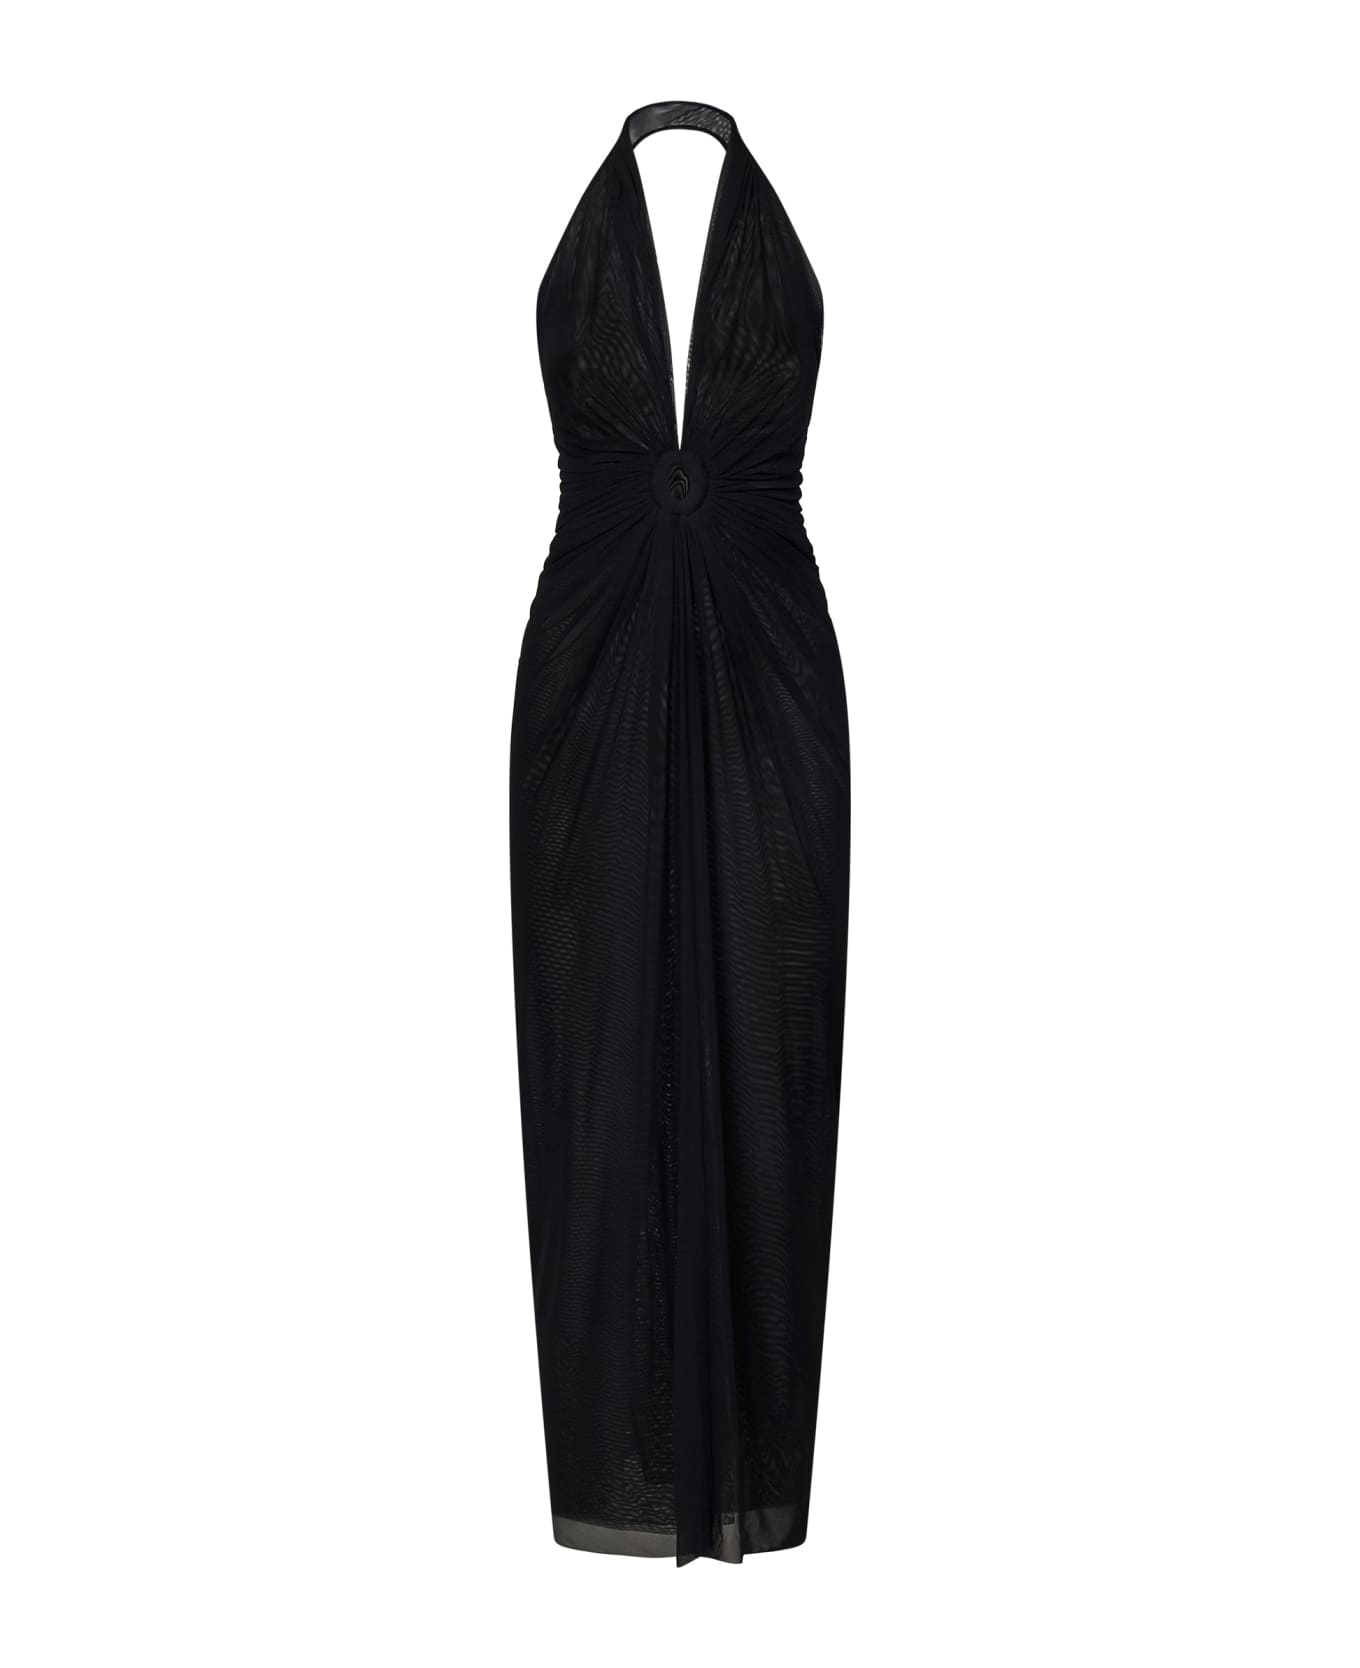 Fisico - Cristina Ferrari Fisico Dress - Black ワンピース＆ドレス